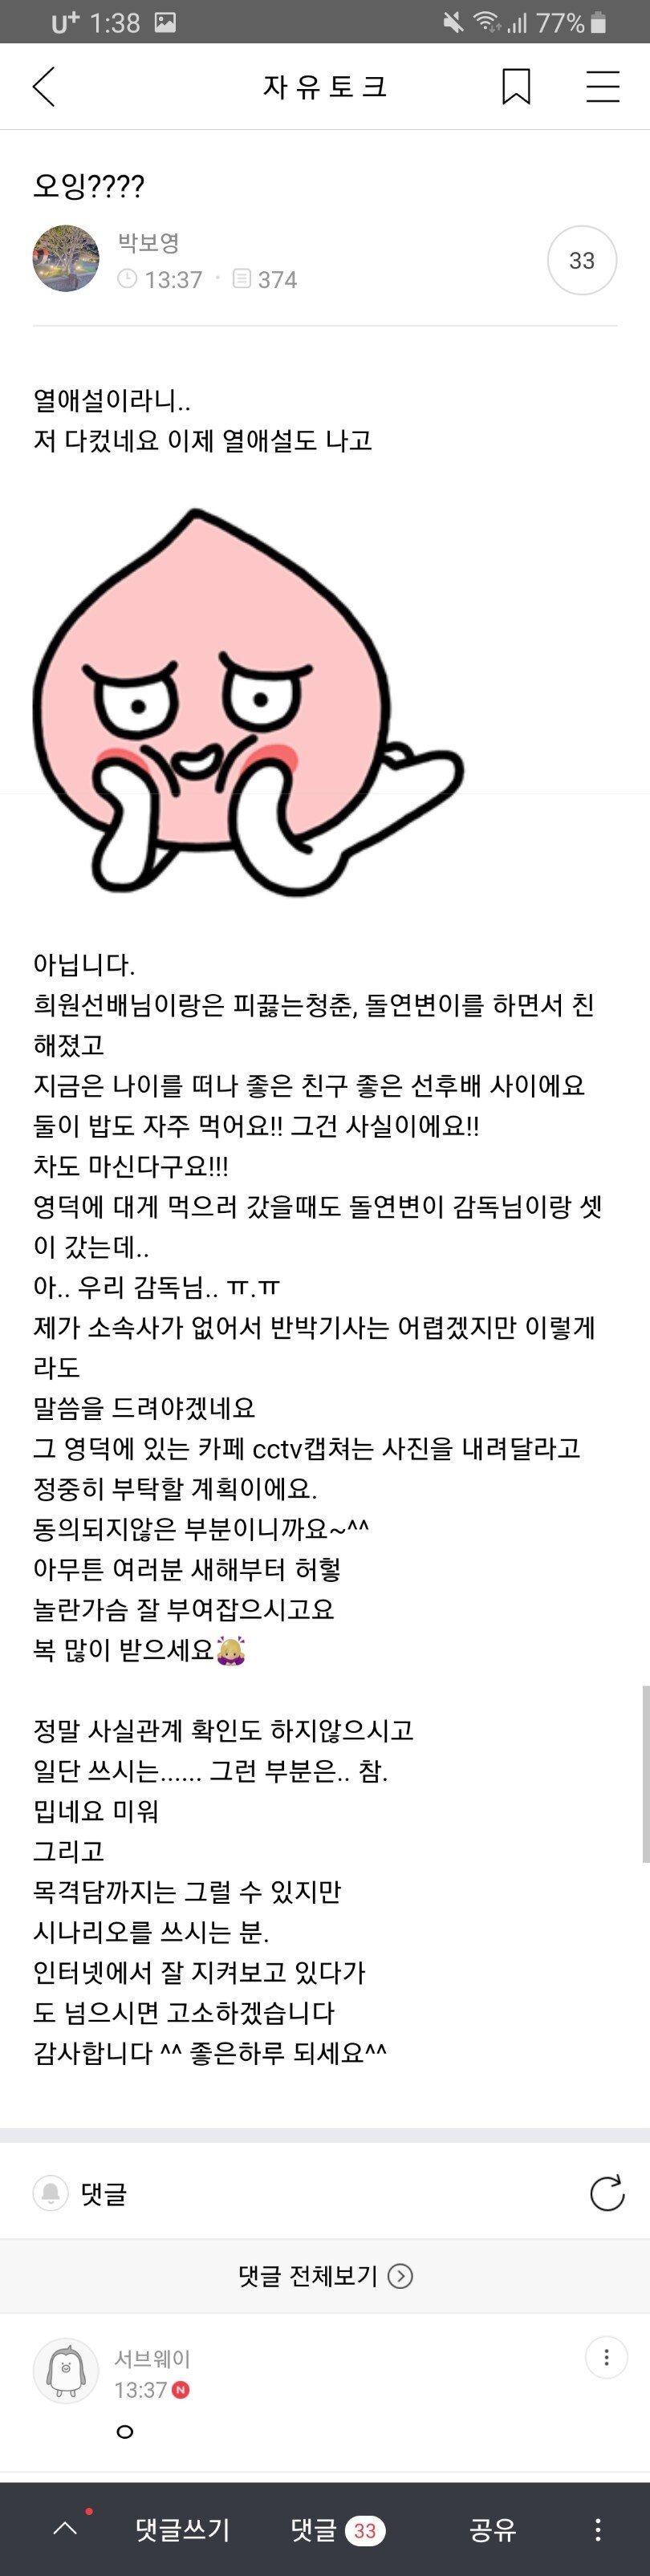 박보영, 김희원과의 열애설 부인 (친한 선후배사이)